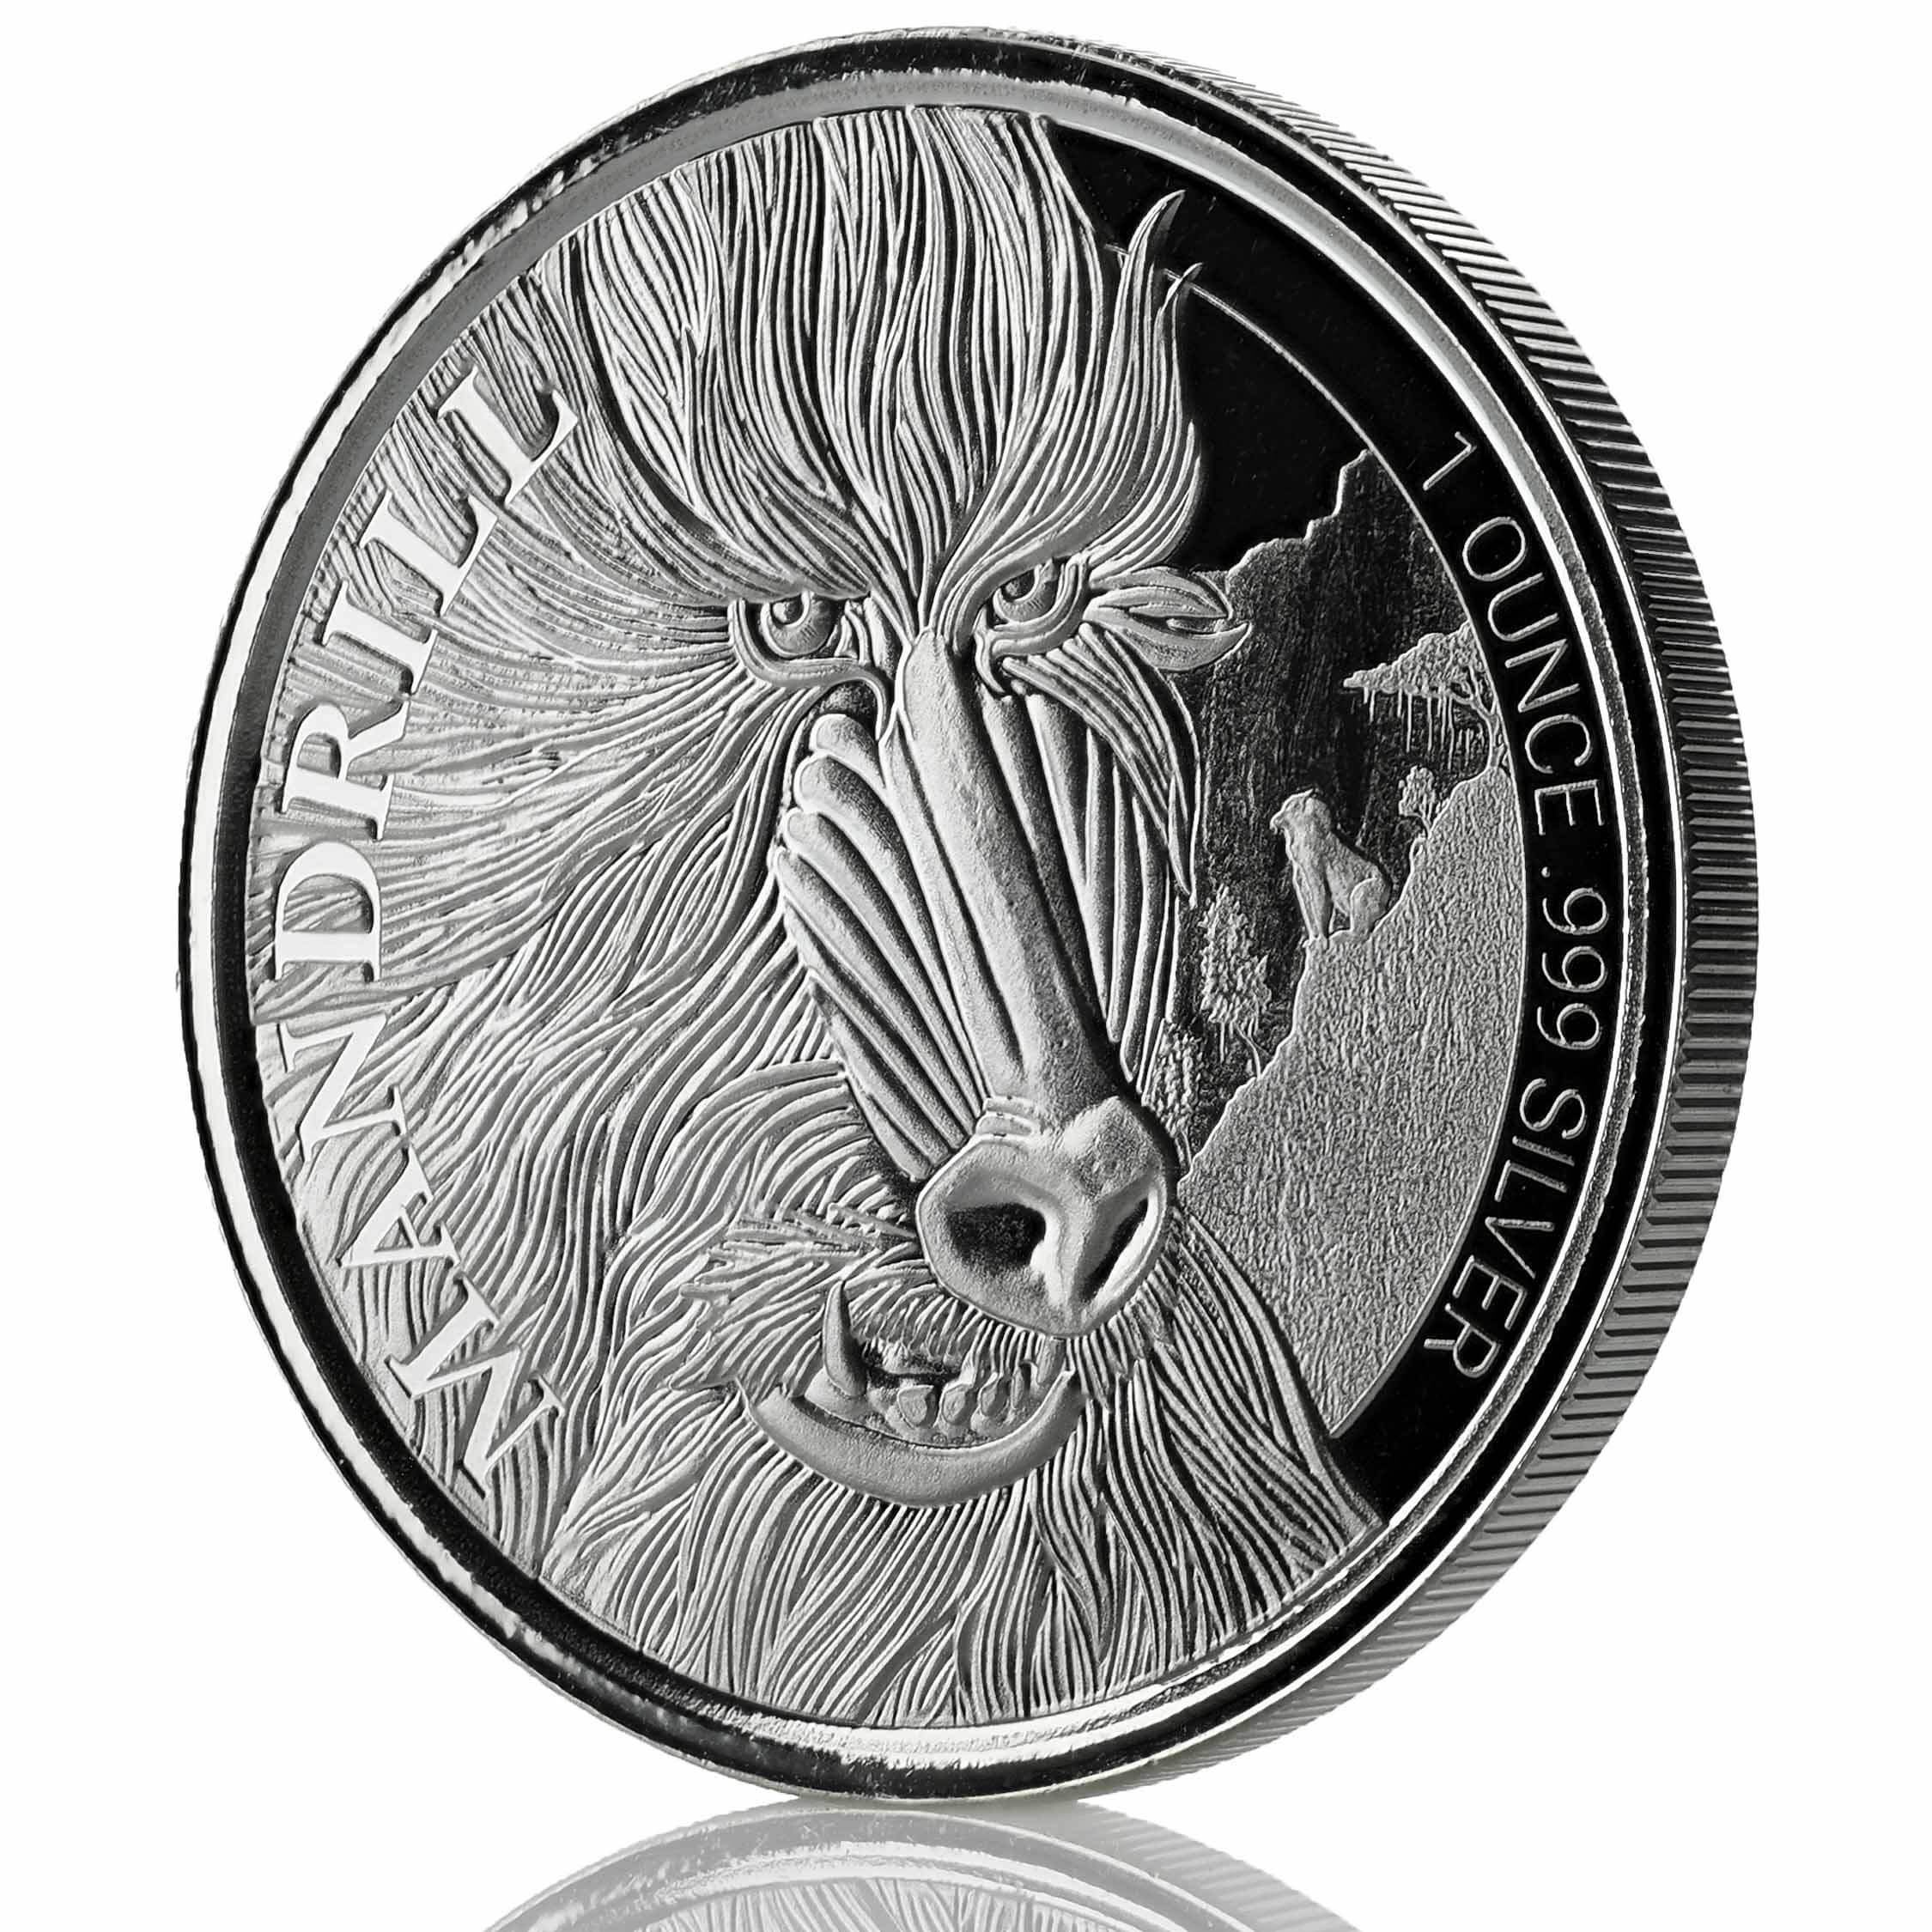 2019 Cameroon Cheetah 1 Oz Silver Coin (copy)